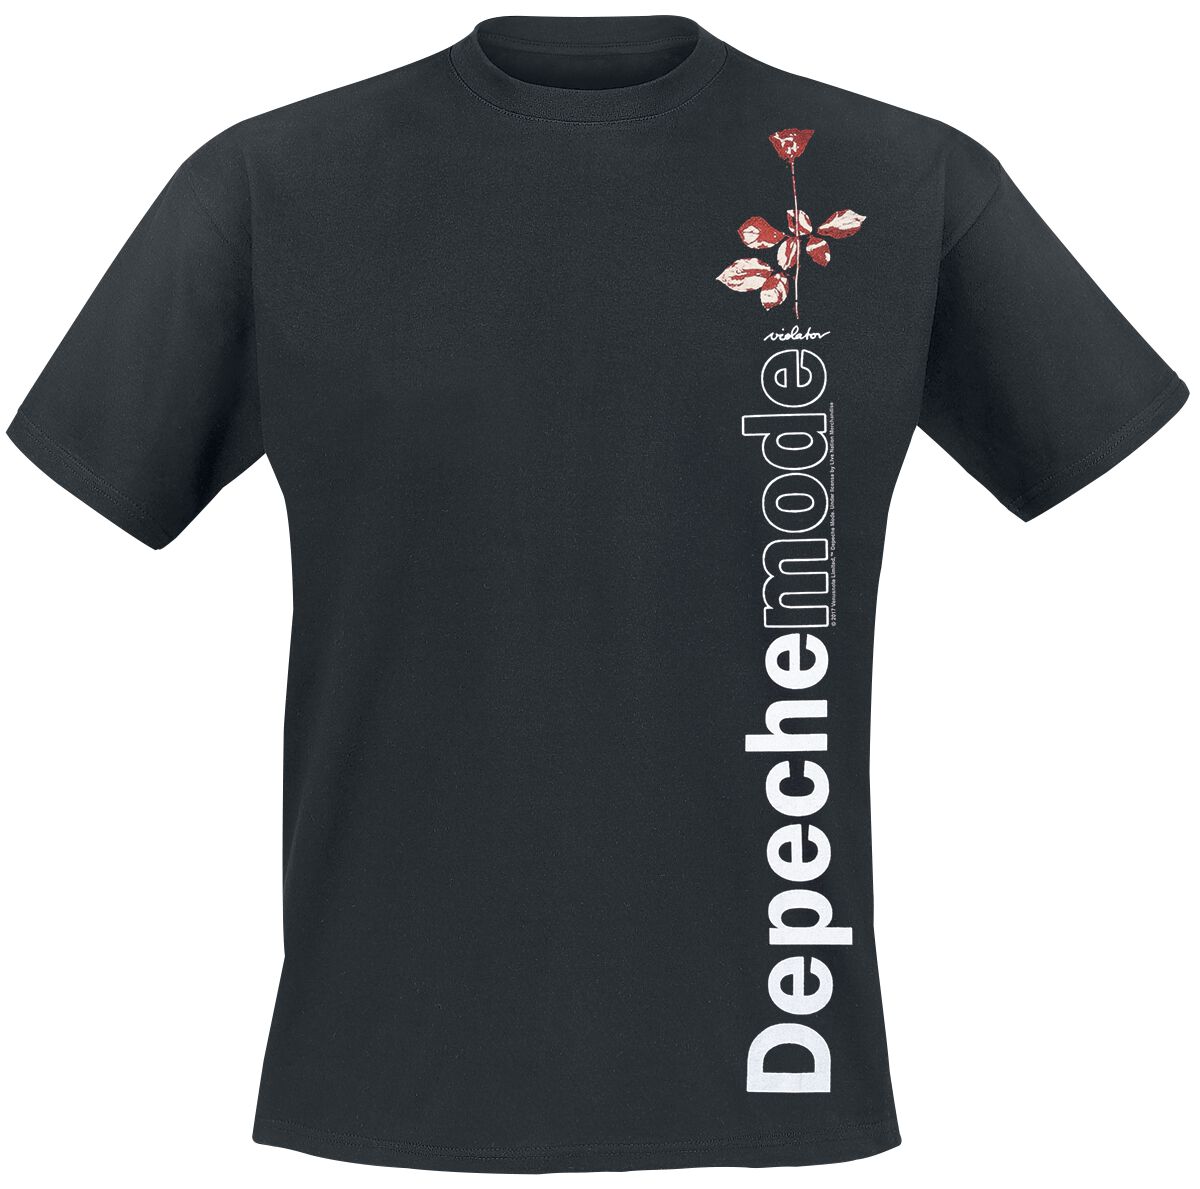 T-Shirt Manches courtes de Depeche Mode - Violator Side Rose - XL - pour Homme - noir